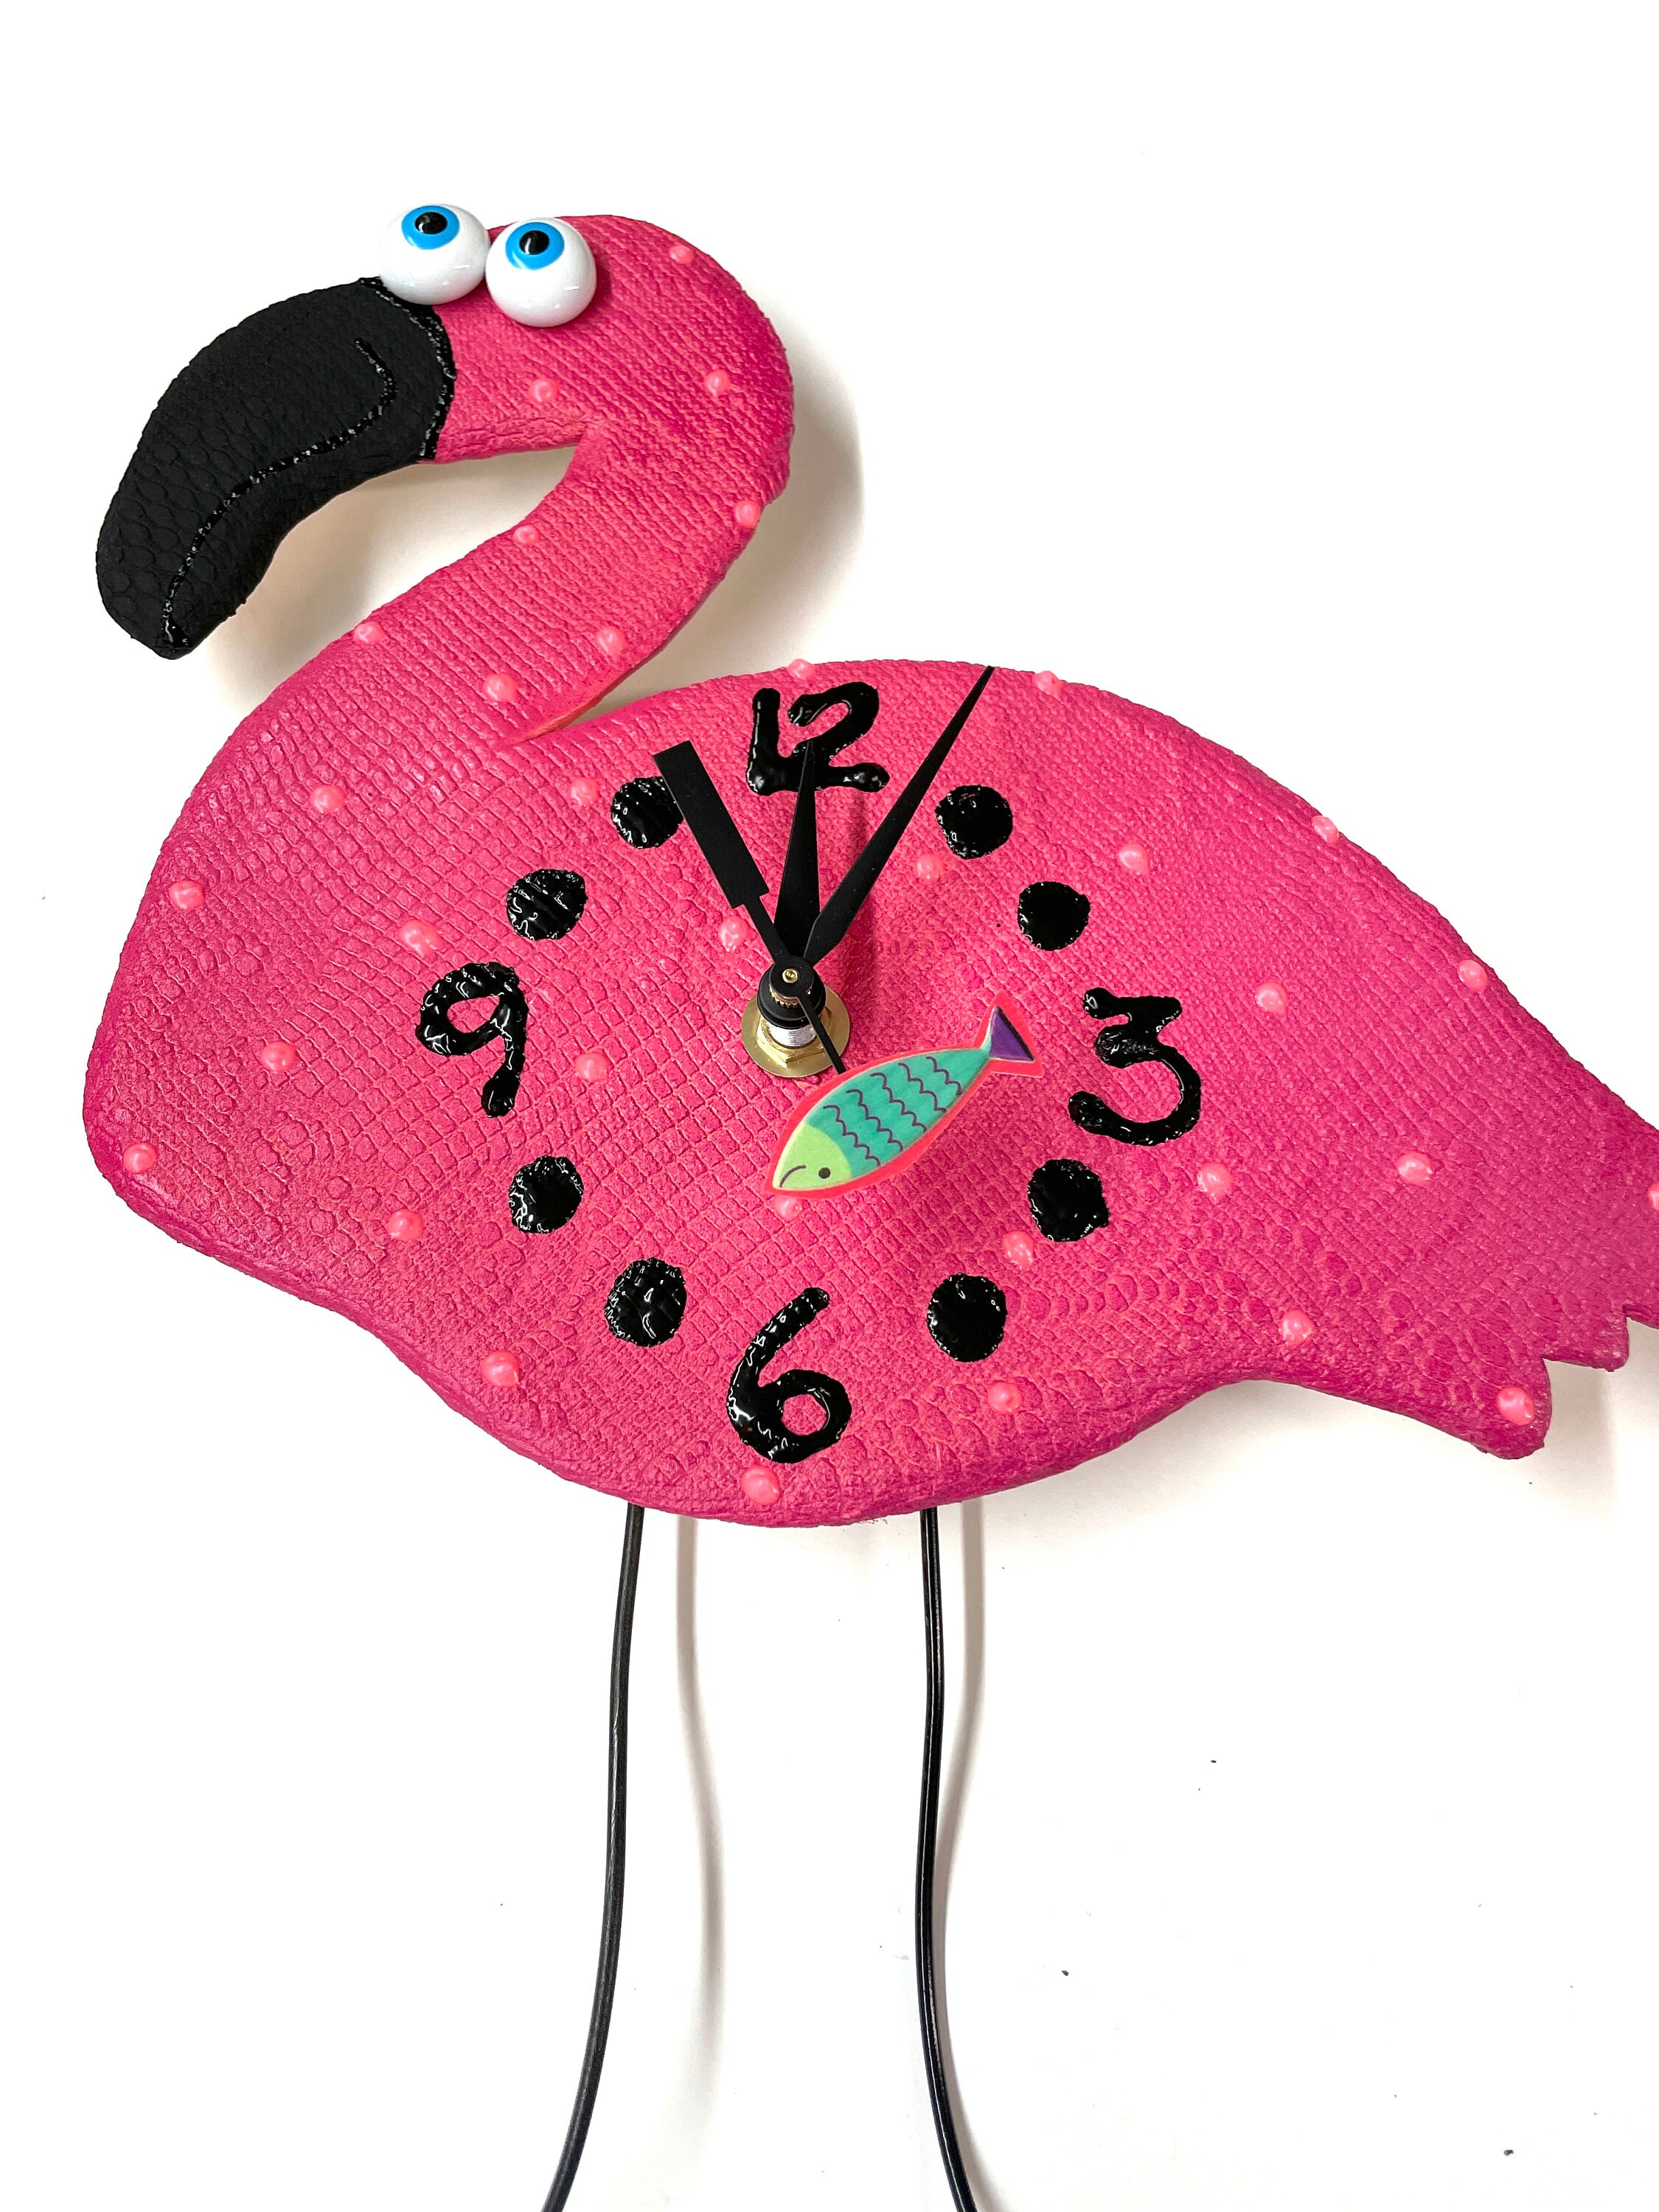 PINK FLAMINGO WALL CLOCK DECORATIVE BIRD GIFT FLORIDA ART DECOR 